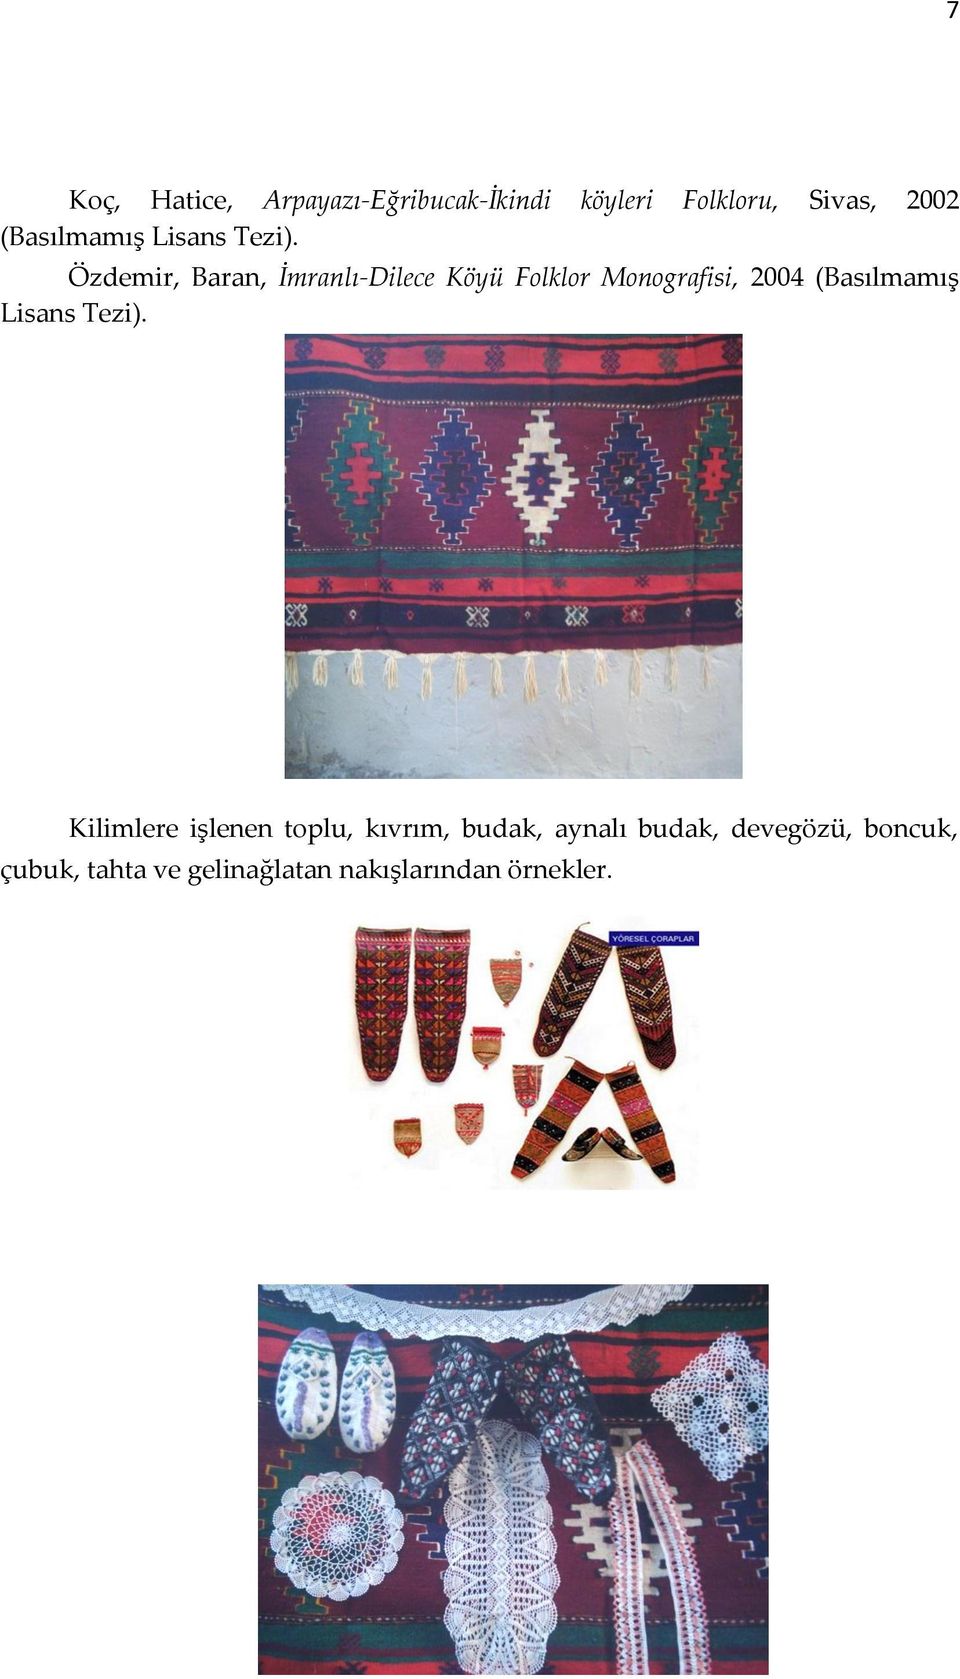 Özdemir, Baran, İmranlı-Dilece Köyü Folklor Monografisi, 2004  Kilimlere